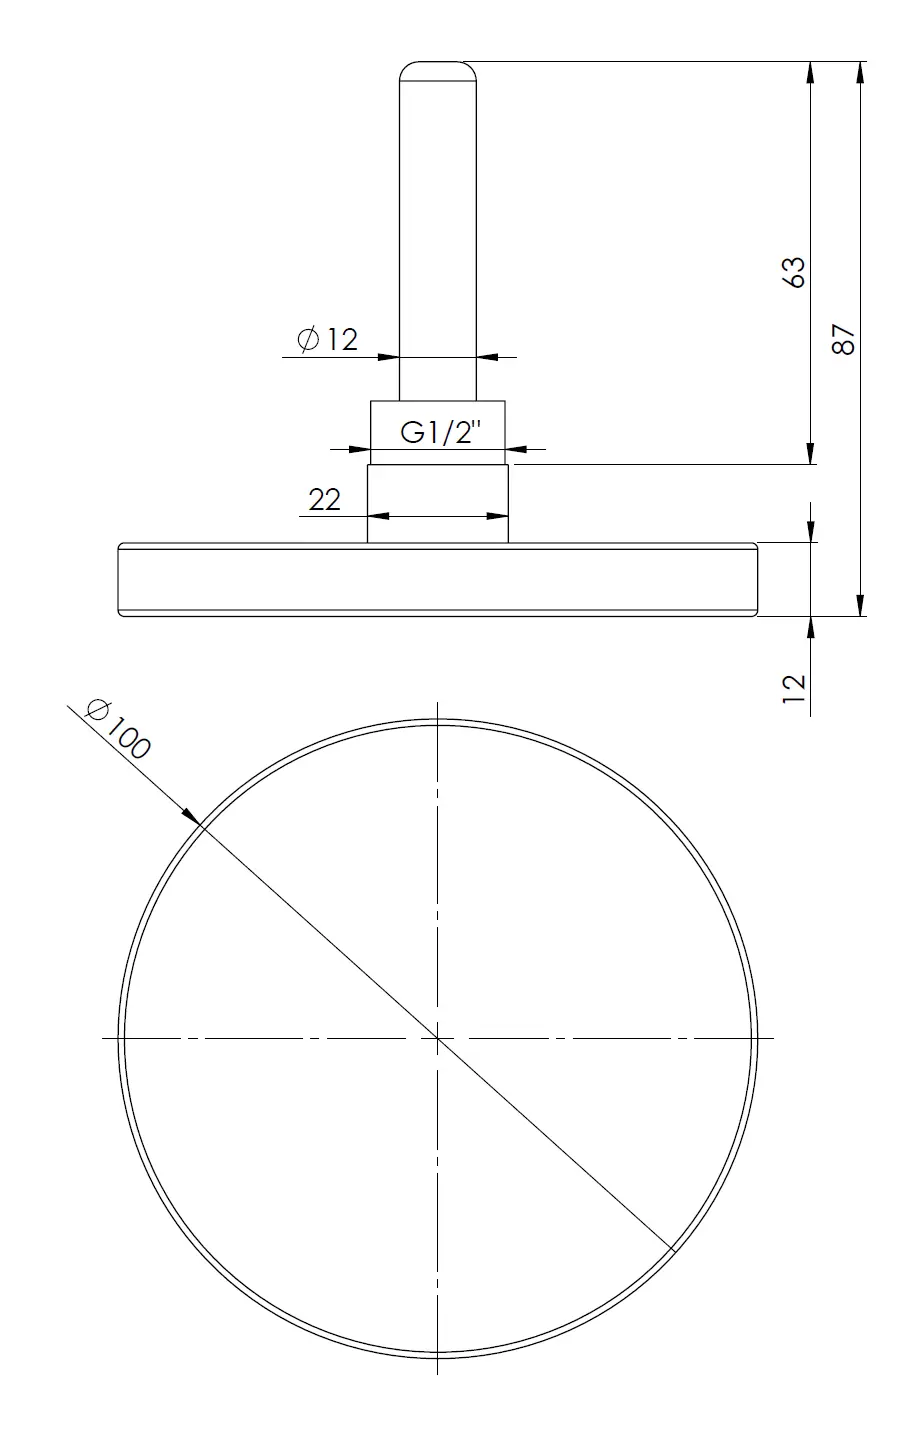 Termometr bimetaliczny BiTh 100, fi100 mm, 0÷60°C, L 63 mm, G1/2", ax, kl. 2 - budowa